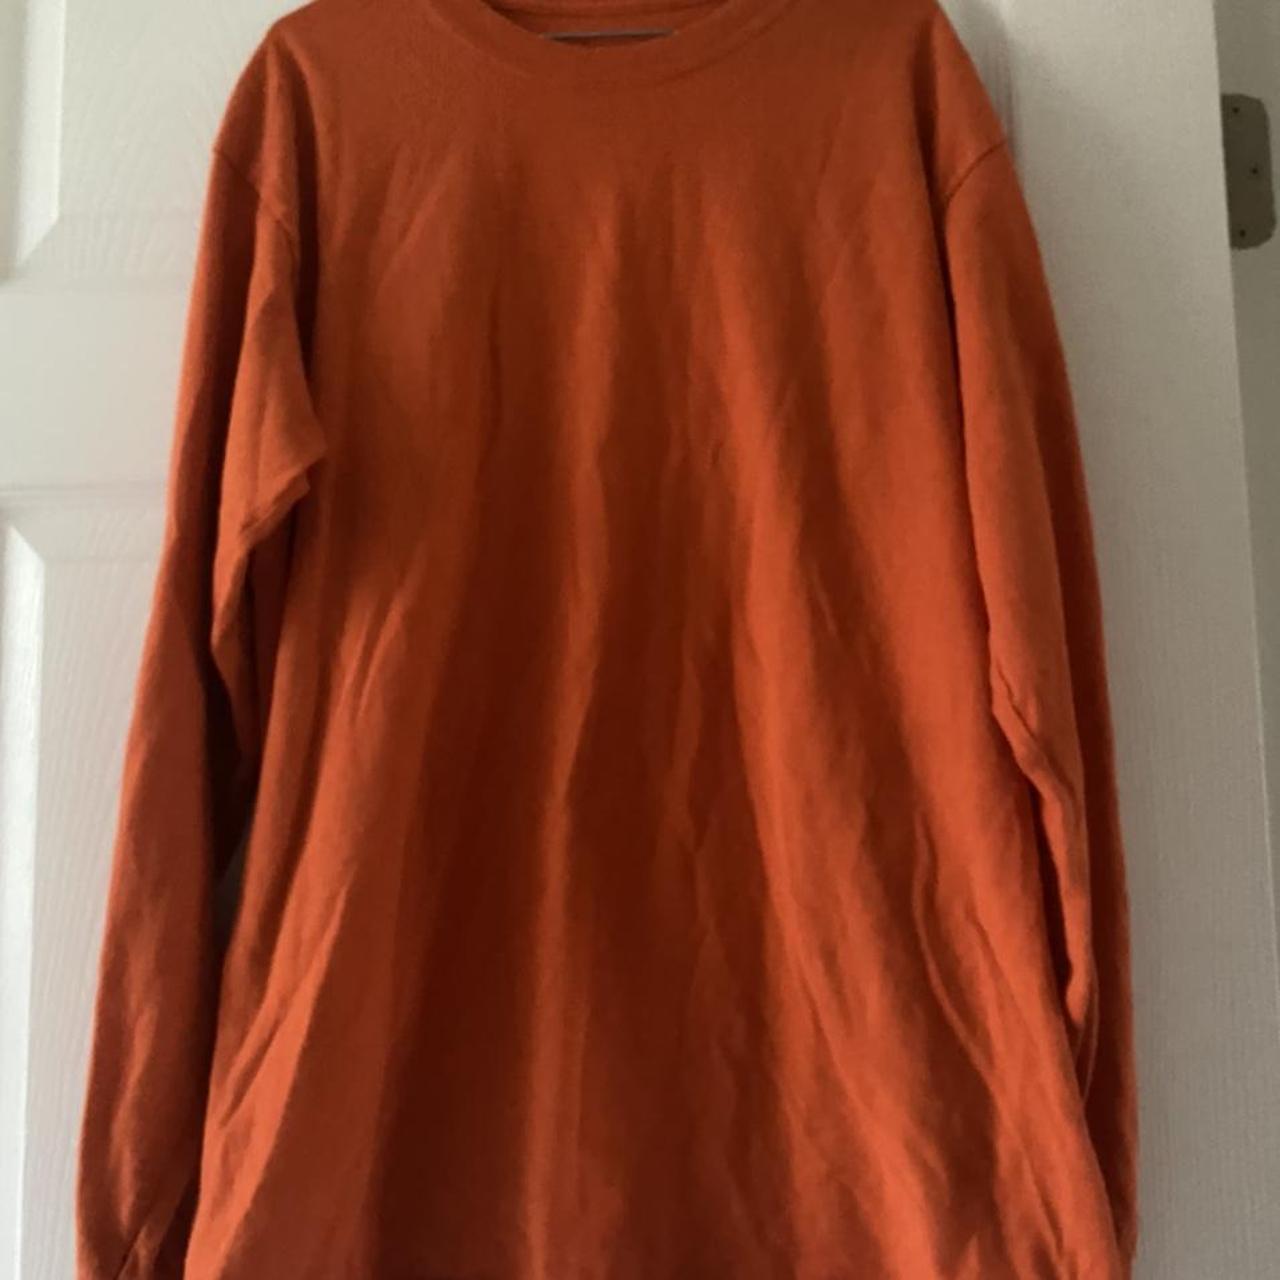 Product Image 2 - orange isle long sleeve